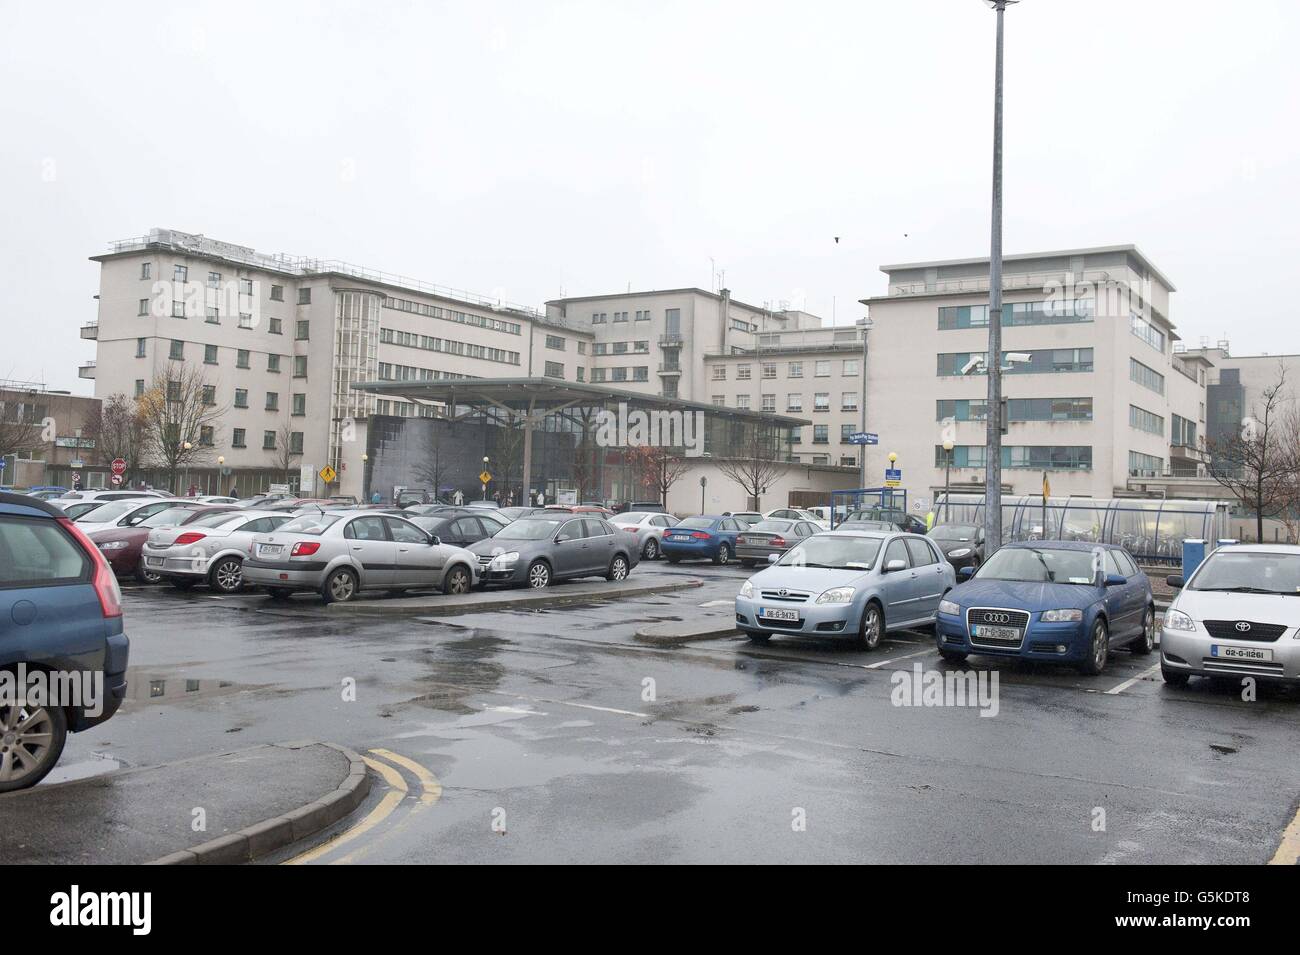 Une vue générale de l'hôpital universitaire de Galway où Savita Halappanavar, une dentiste âgée de 31 ans, qui était enceinte de 17 semaines quand elle est morte après avoir subi une fausse couche et une septicémie. Banque D'Images